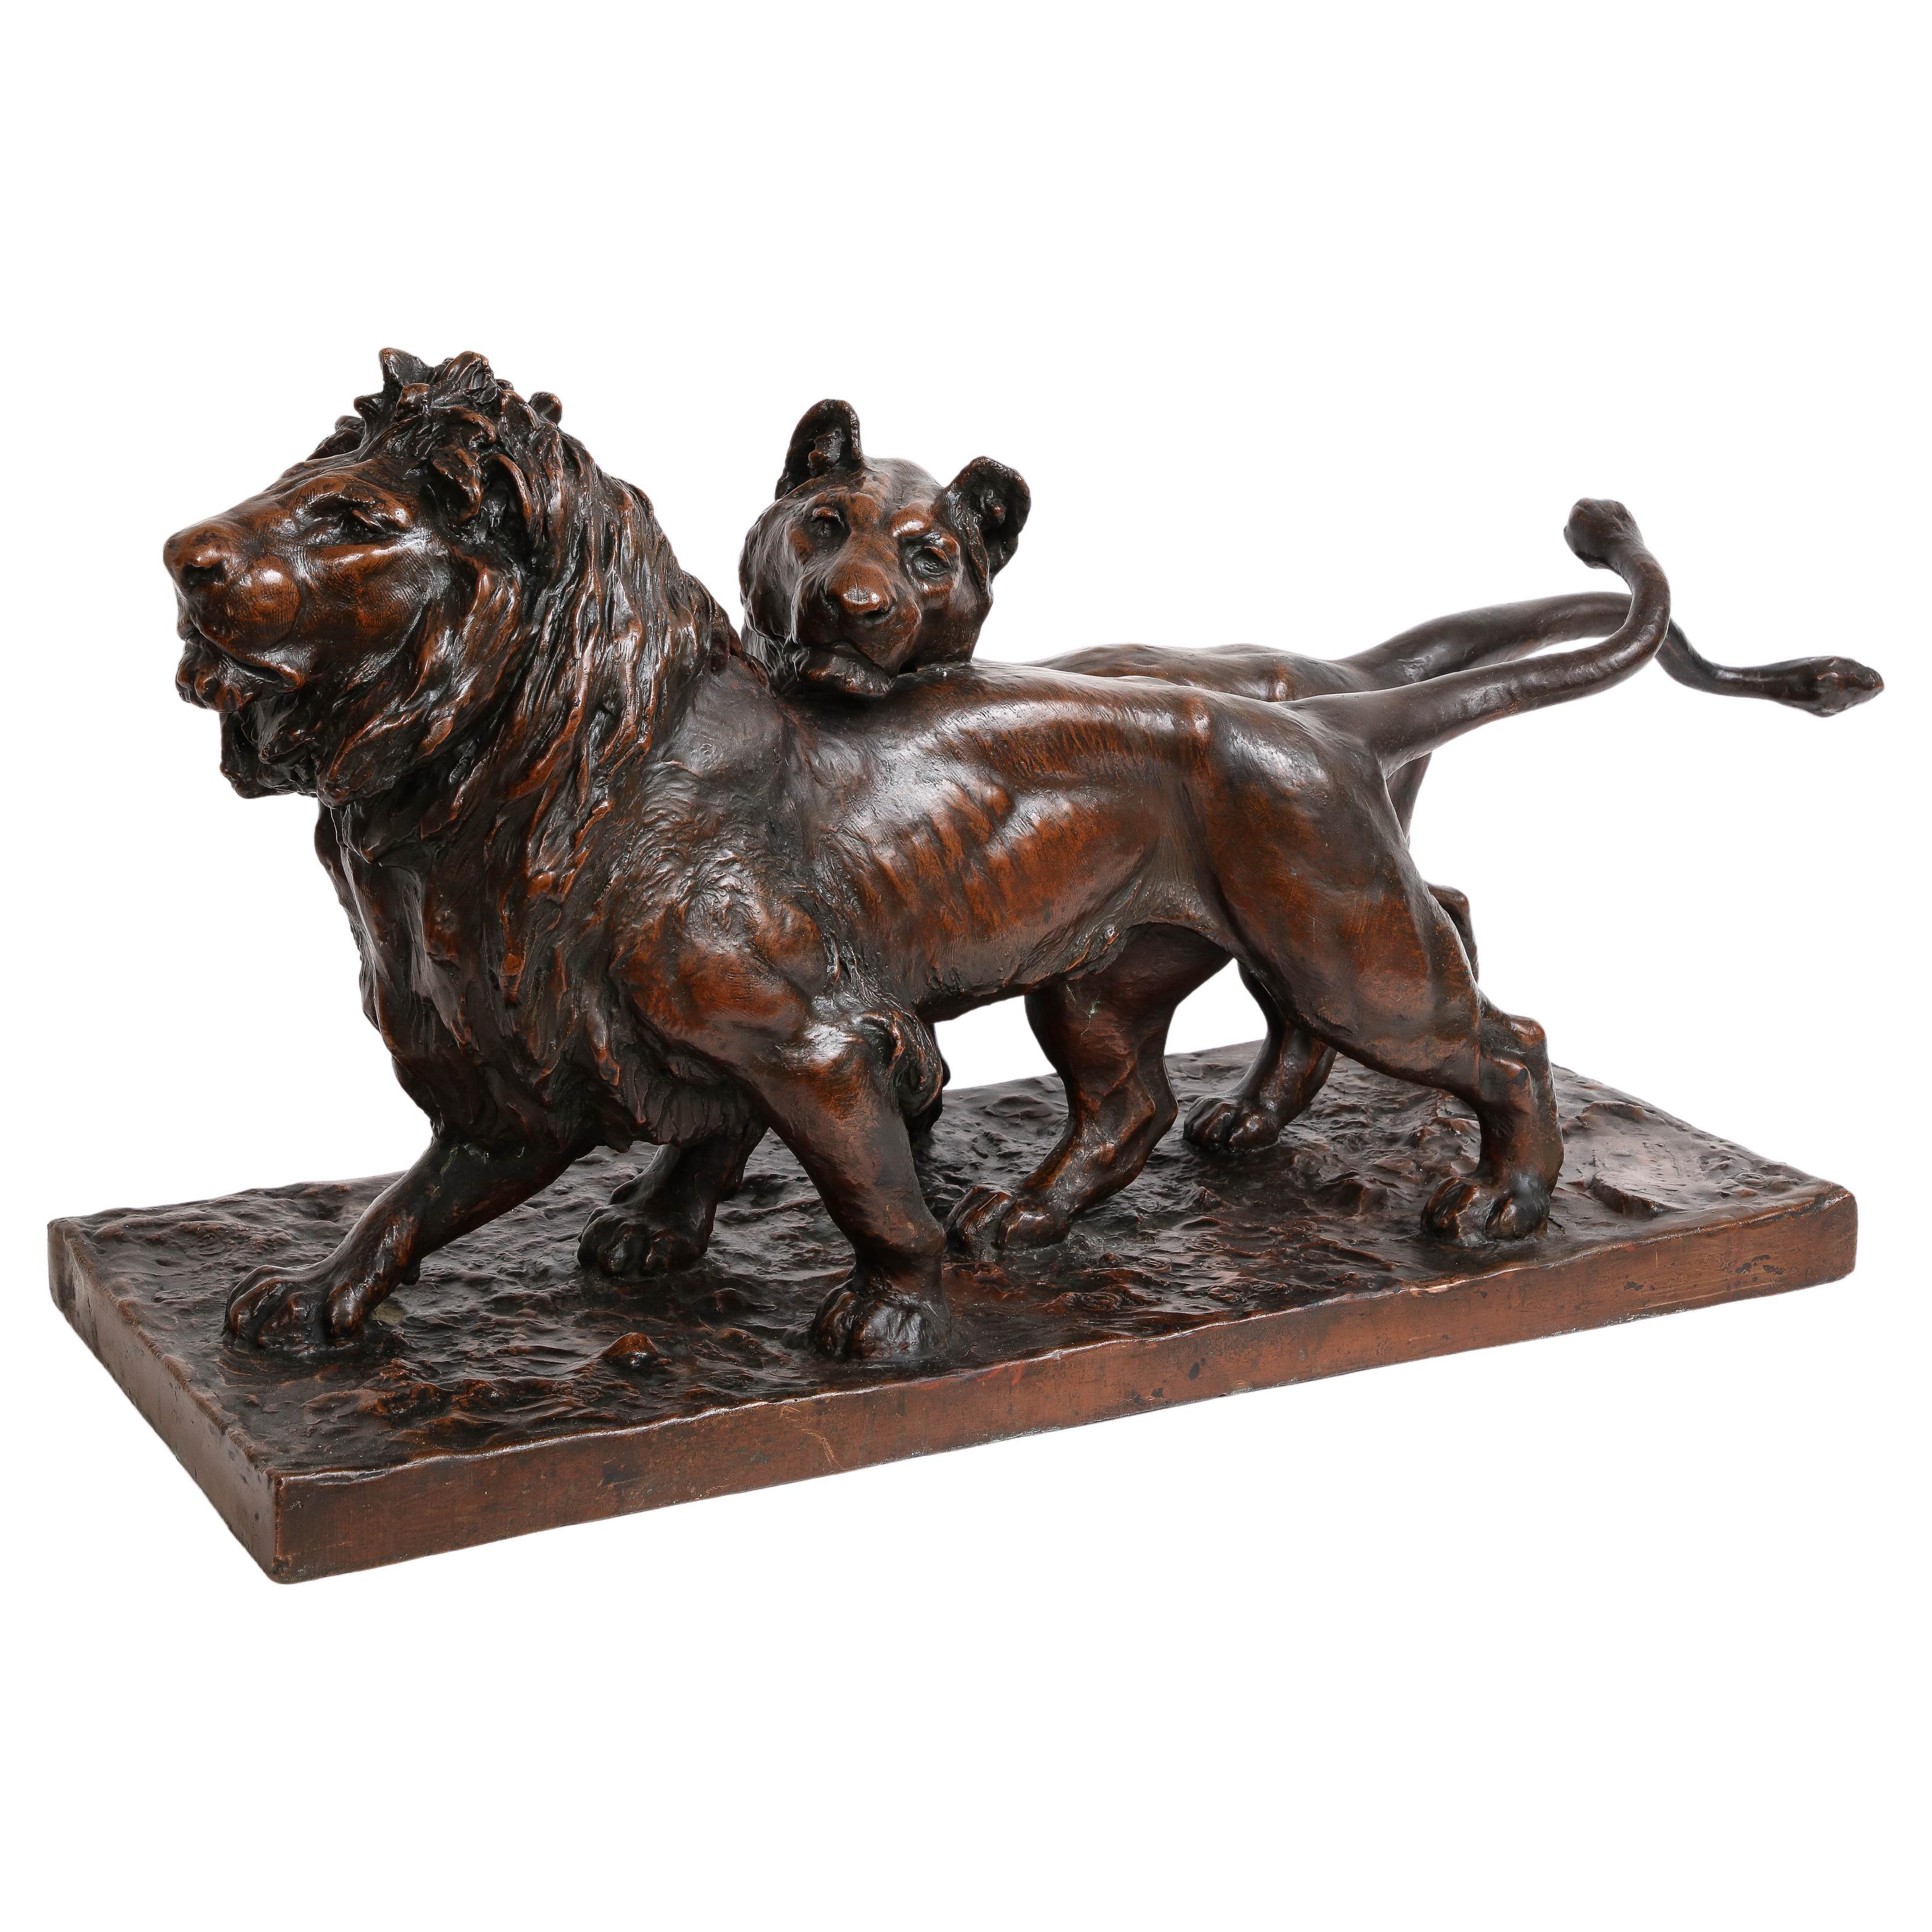 Patinierte Bronzeskulptur von zwei streifenden Löwen, signiert vom Künstler